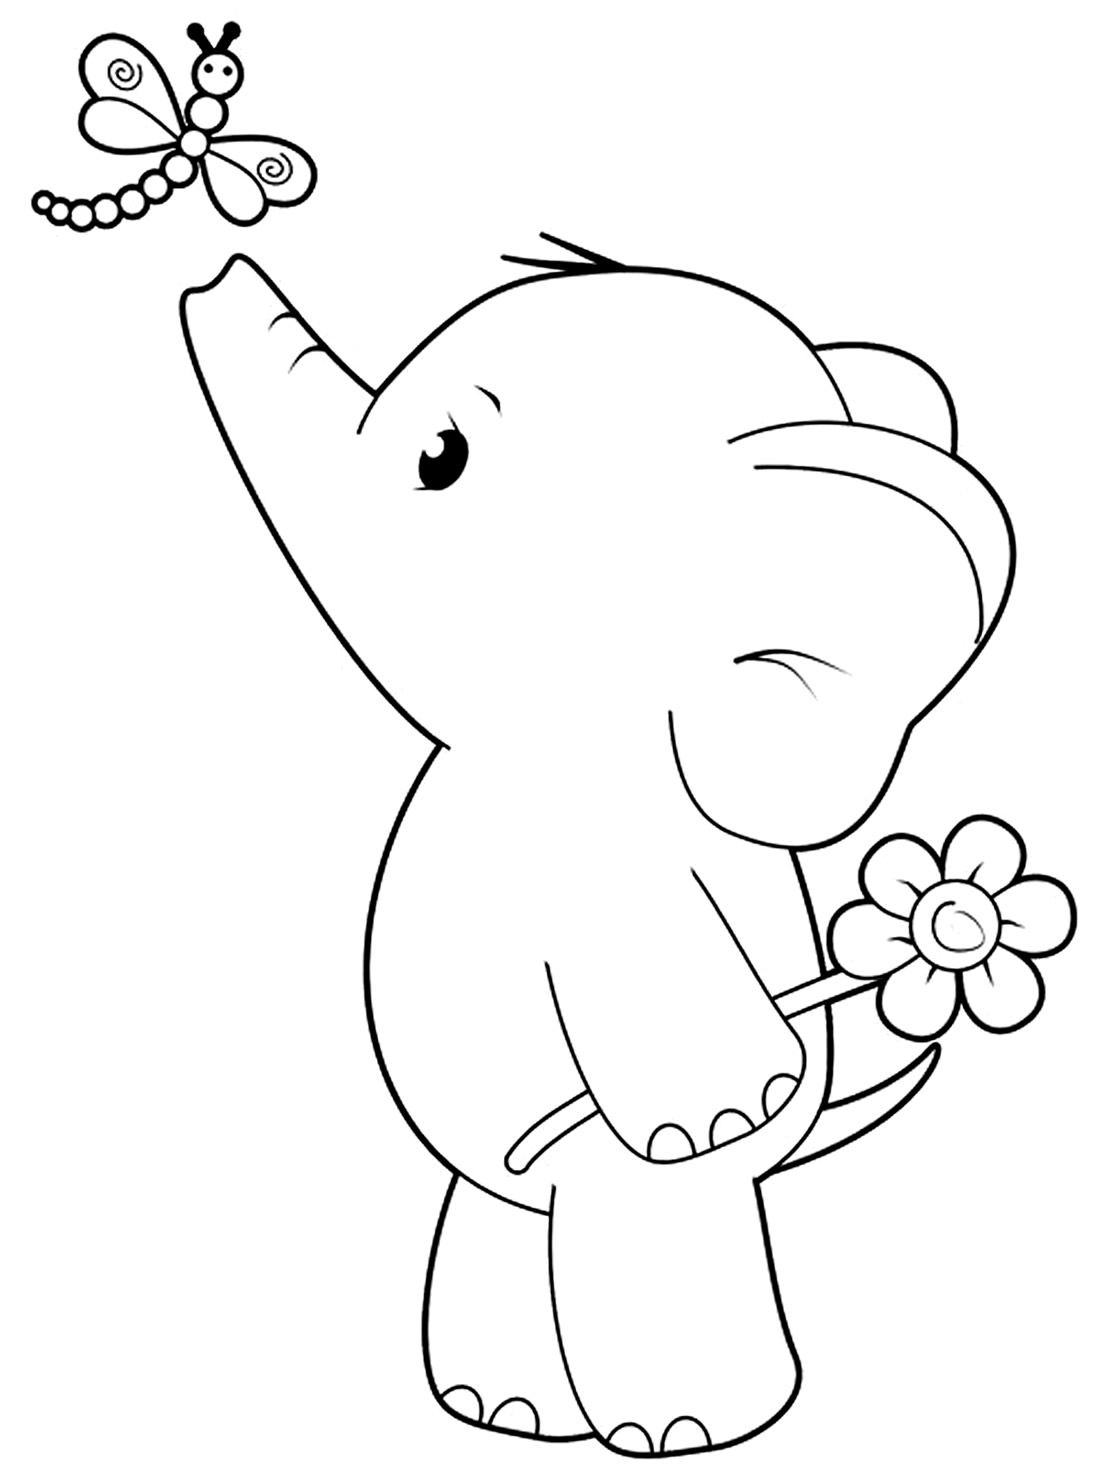 Imagem de elefante para colorir